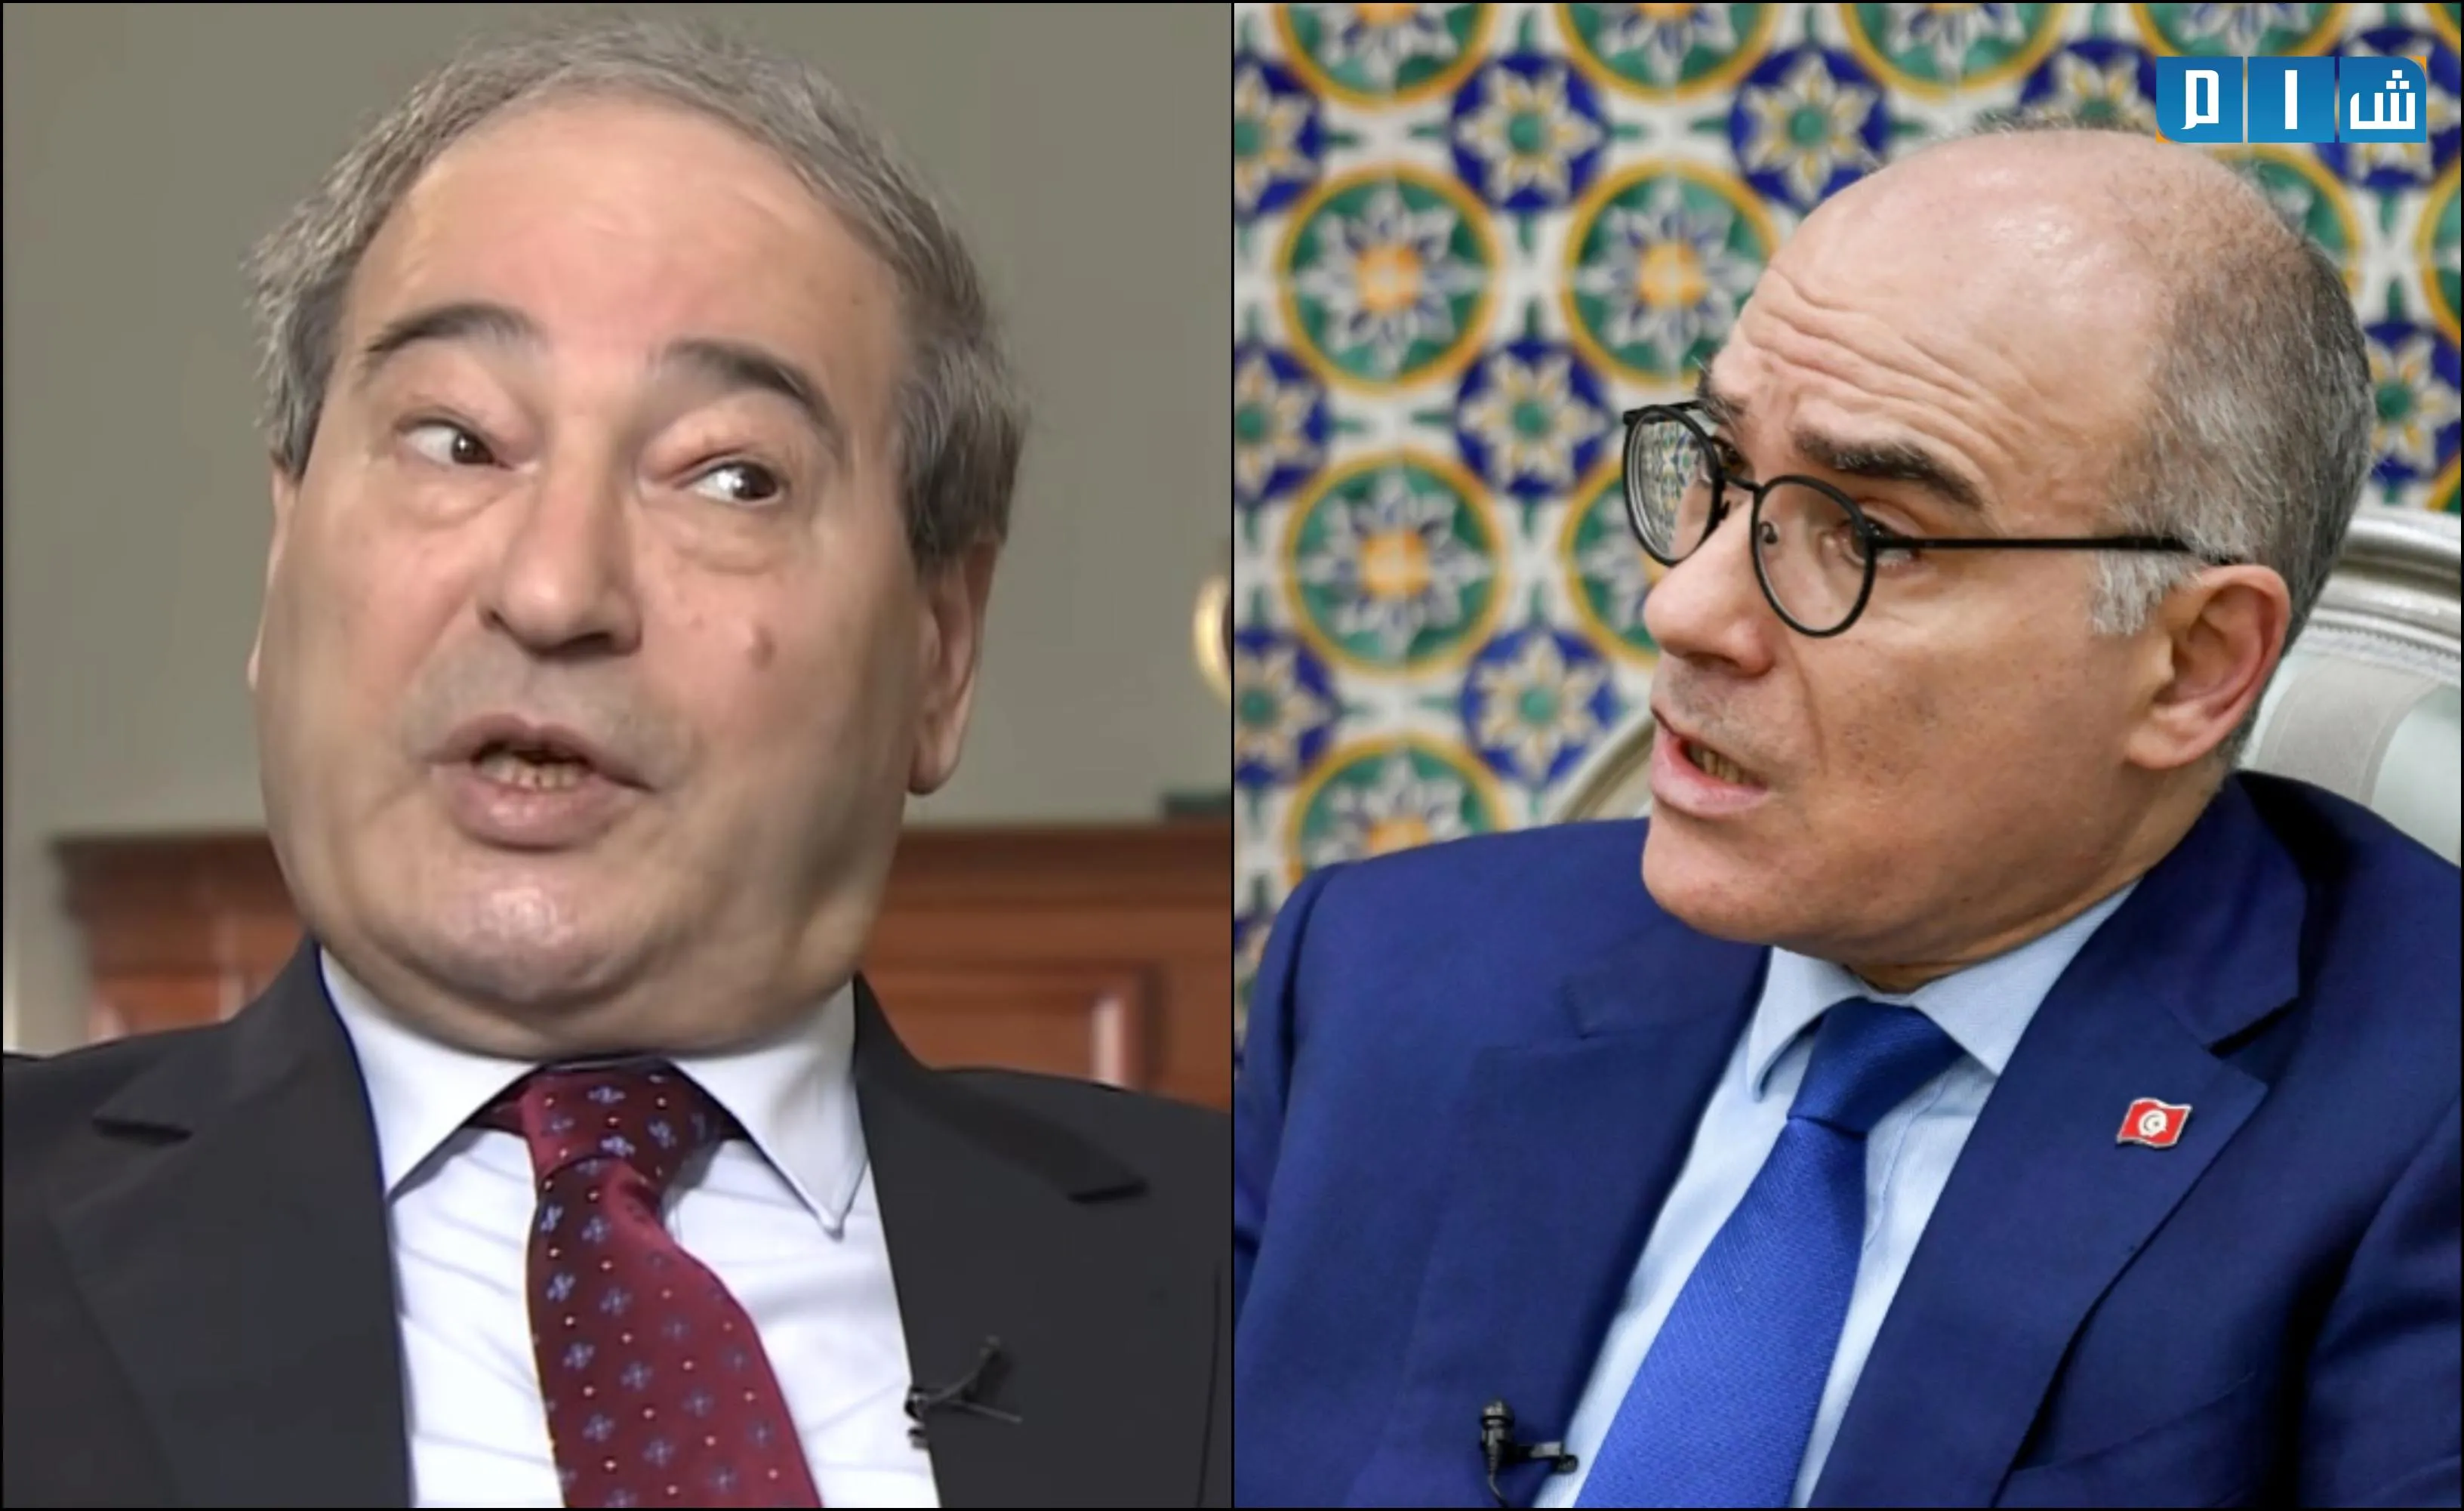 وزير خارجية تونس يُعلم "المقداد" بقرار بلاده برفع التمثيل الدبلوماسي مع دمشق